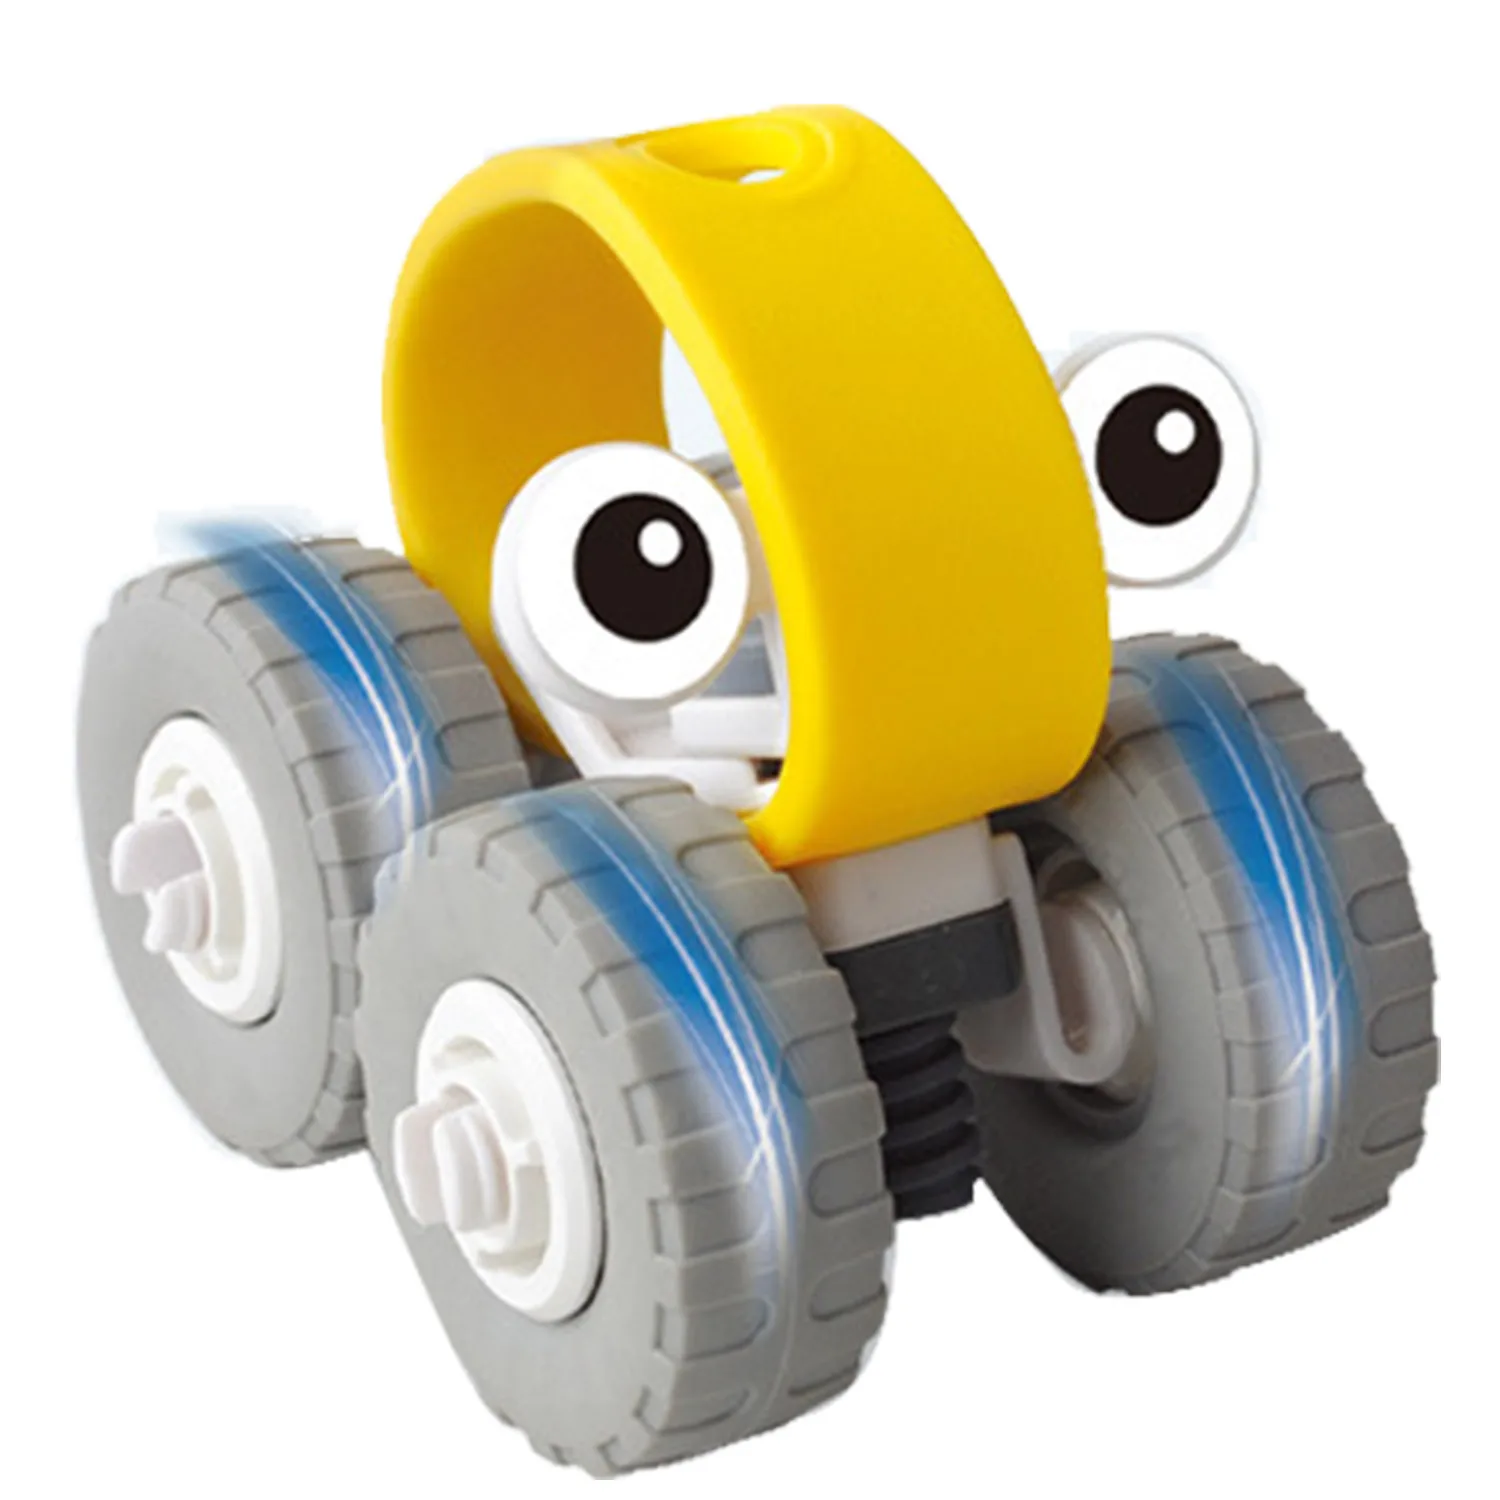 1 комплект детской развивающая игрушка деревянная Радуга Укладка стек кольцо блоки игрушечная Пирамидка